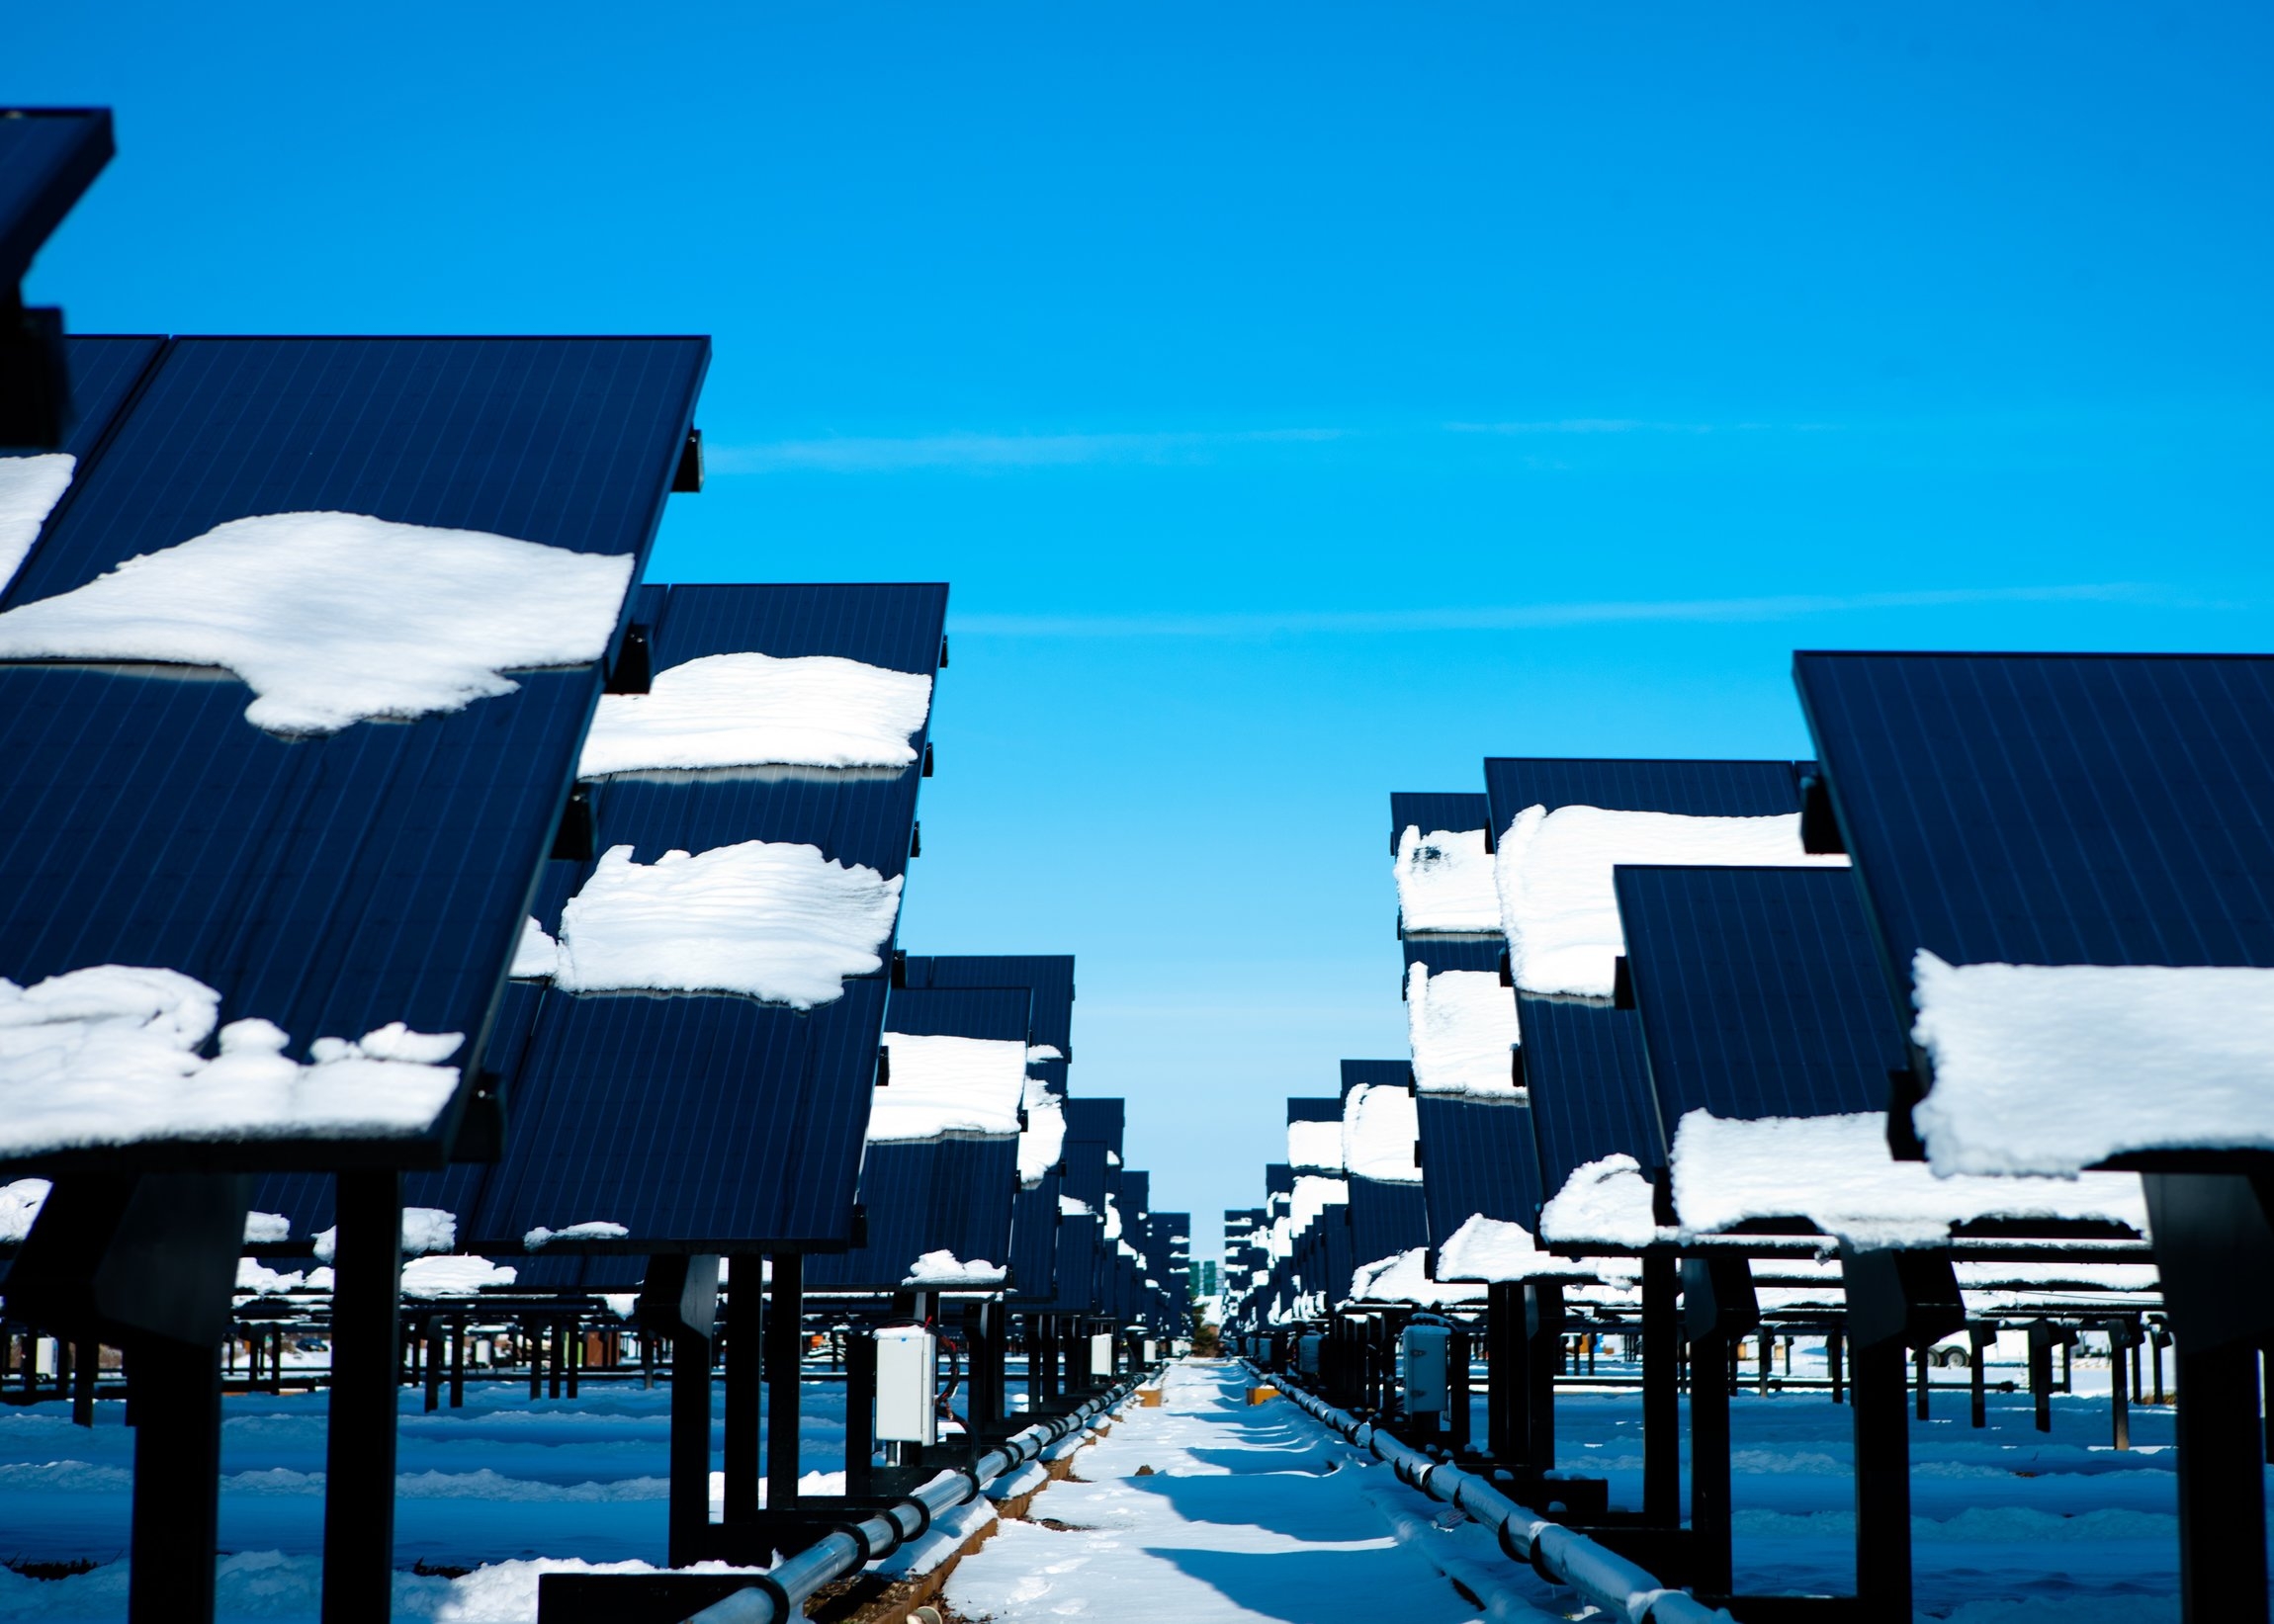  Solar Strand  Buffalo, NY  